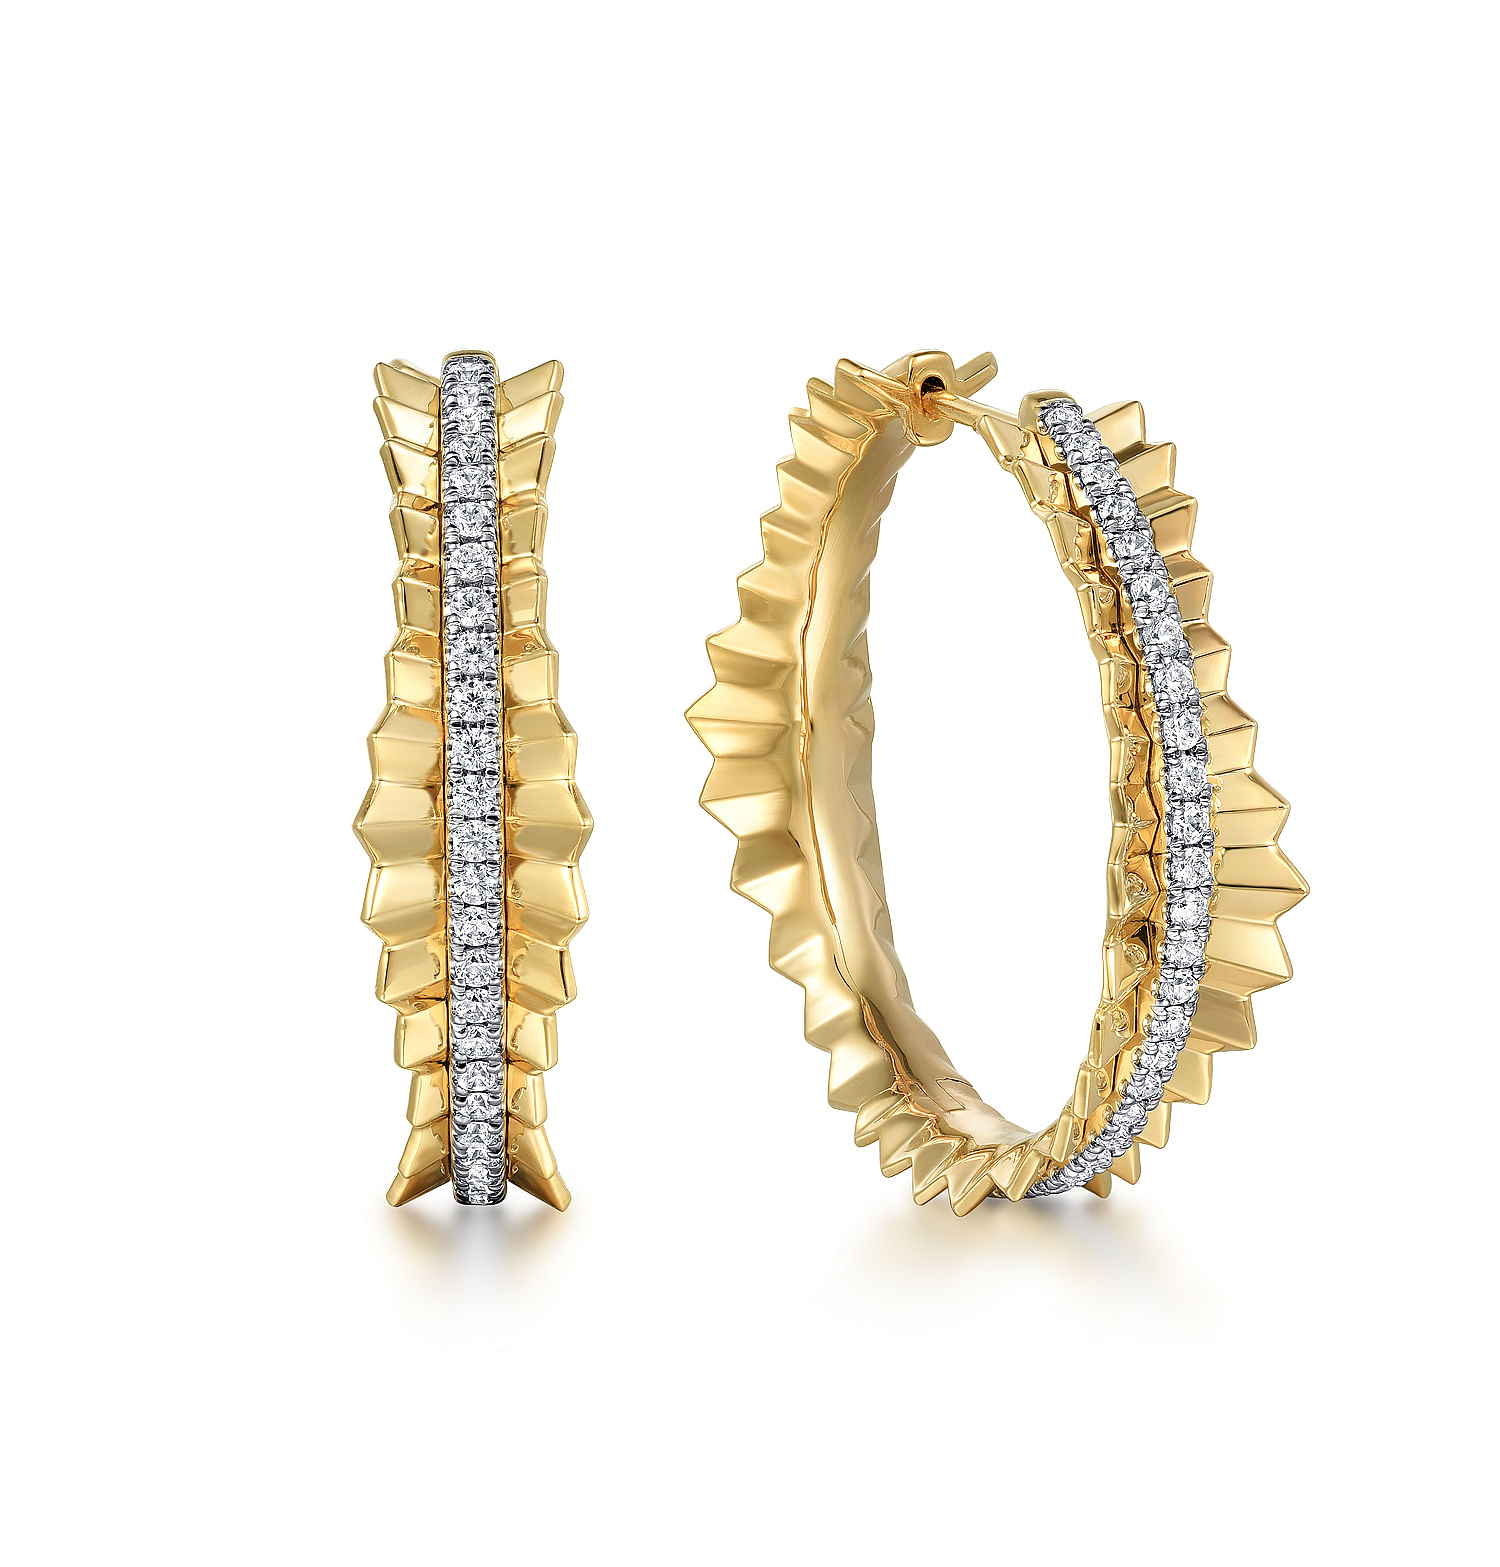 14K Yellow Gold Diamond Cut Hoop Earrings in size 30mm